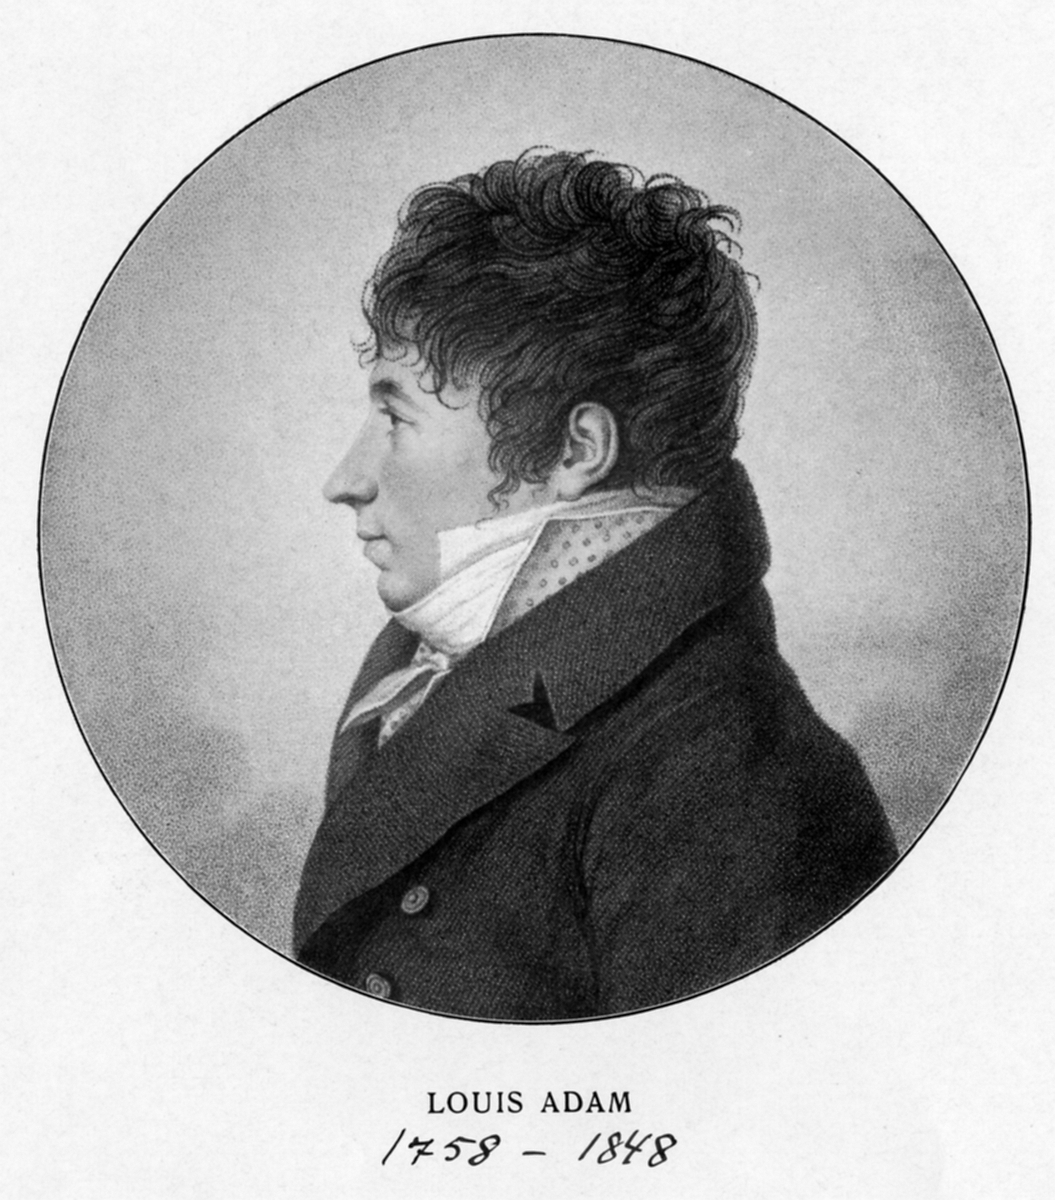 Adam, Louis (1758 - 1848)